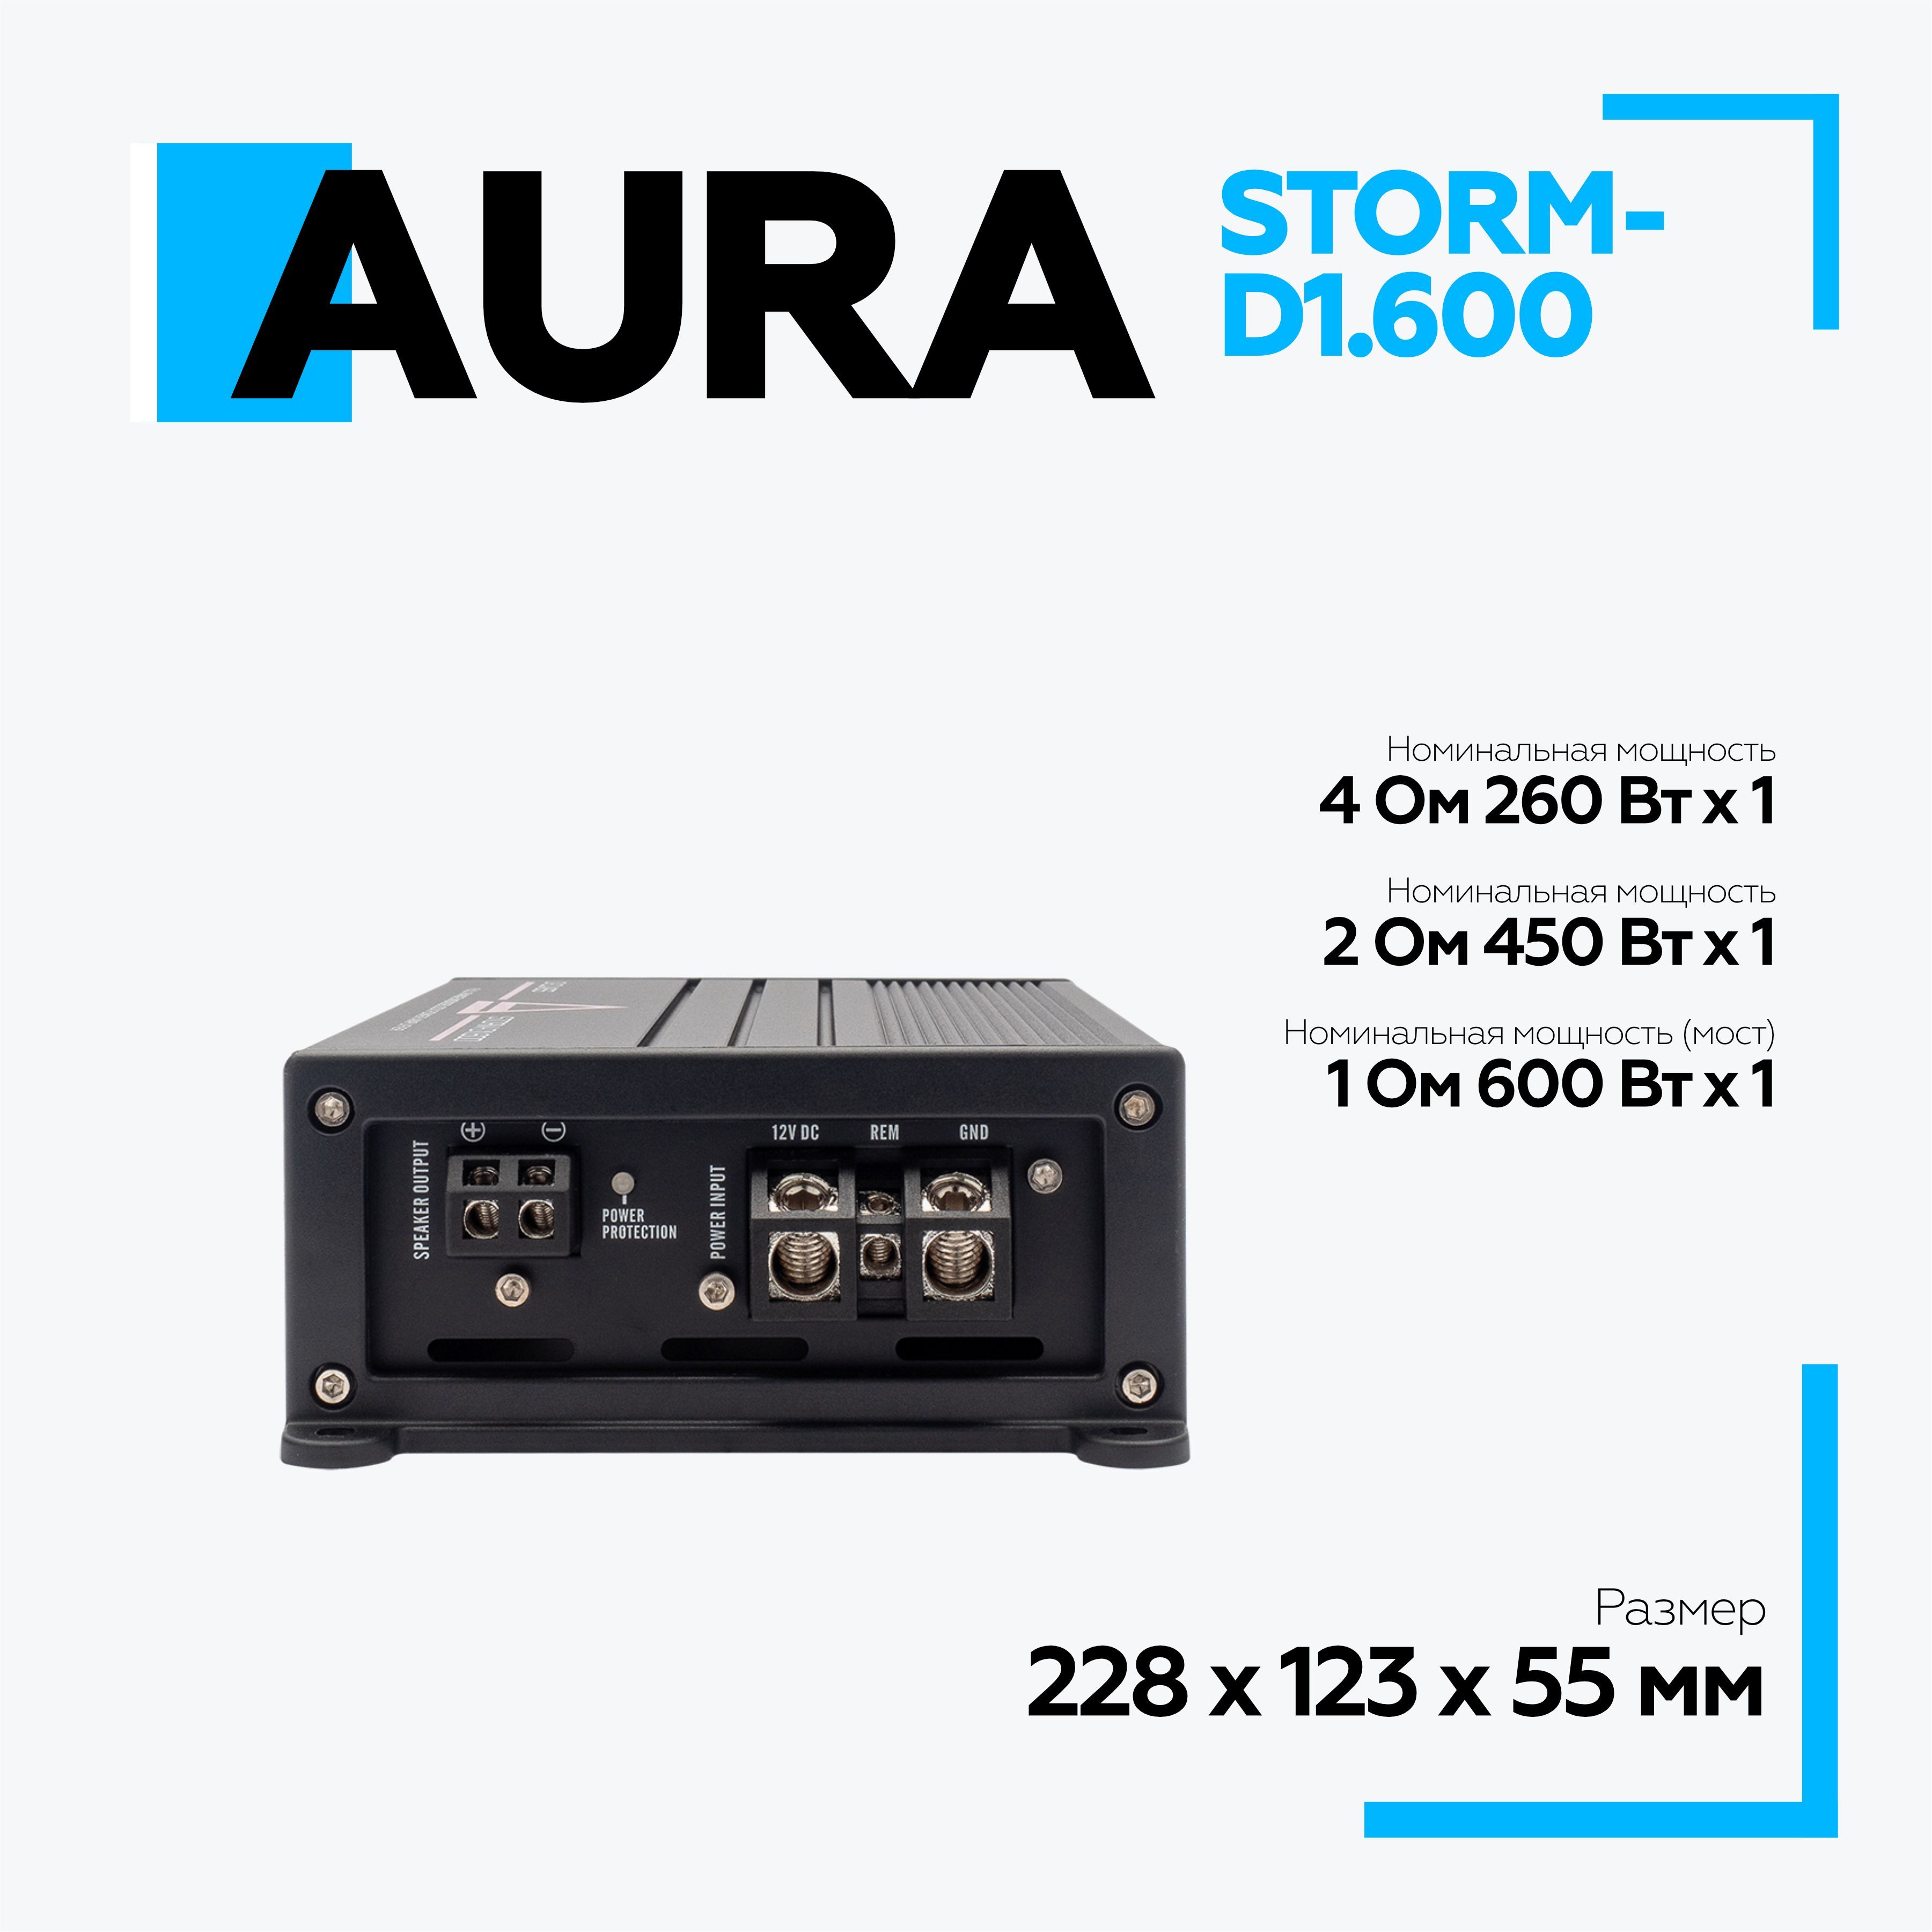 Aura Storm-65c отзывы.